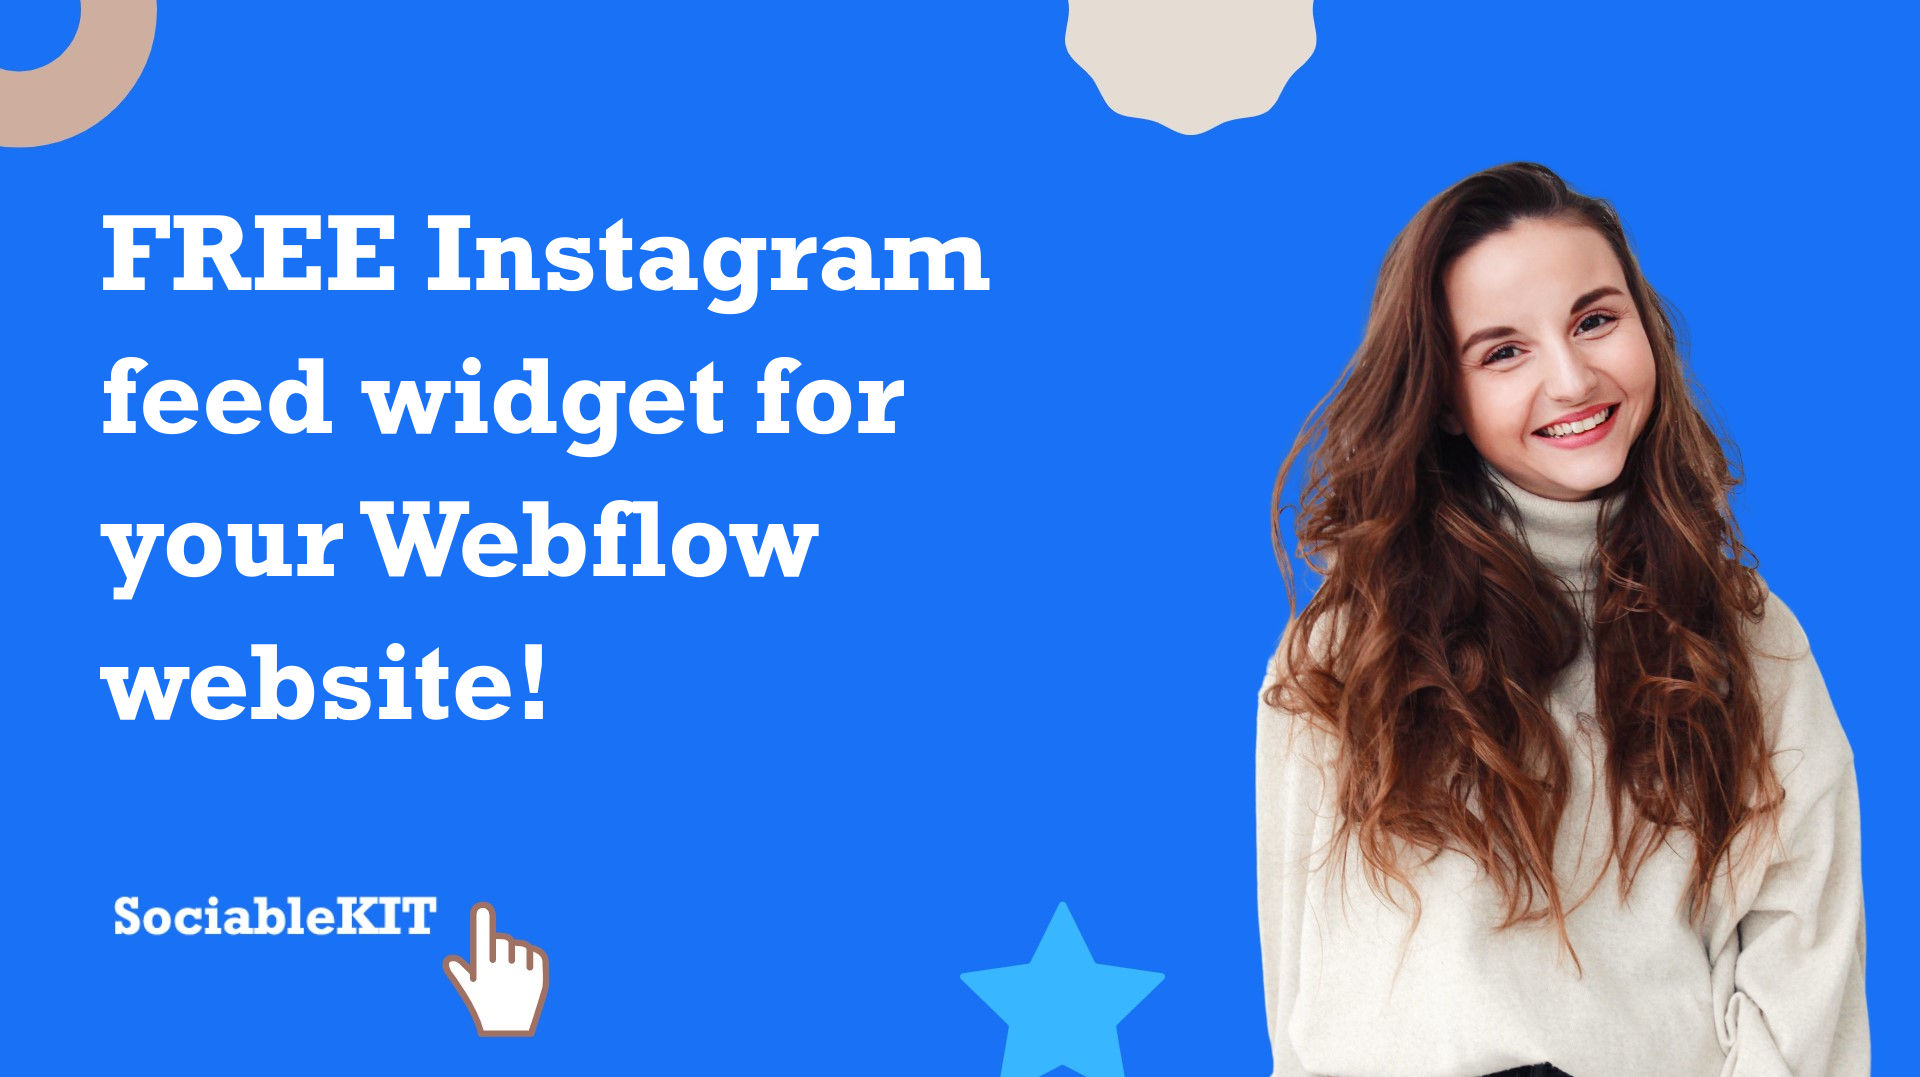 Free Instagram feed widget for your Webflow website